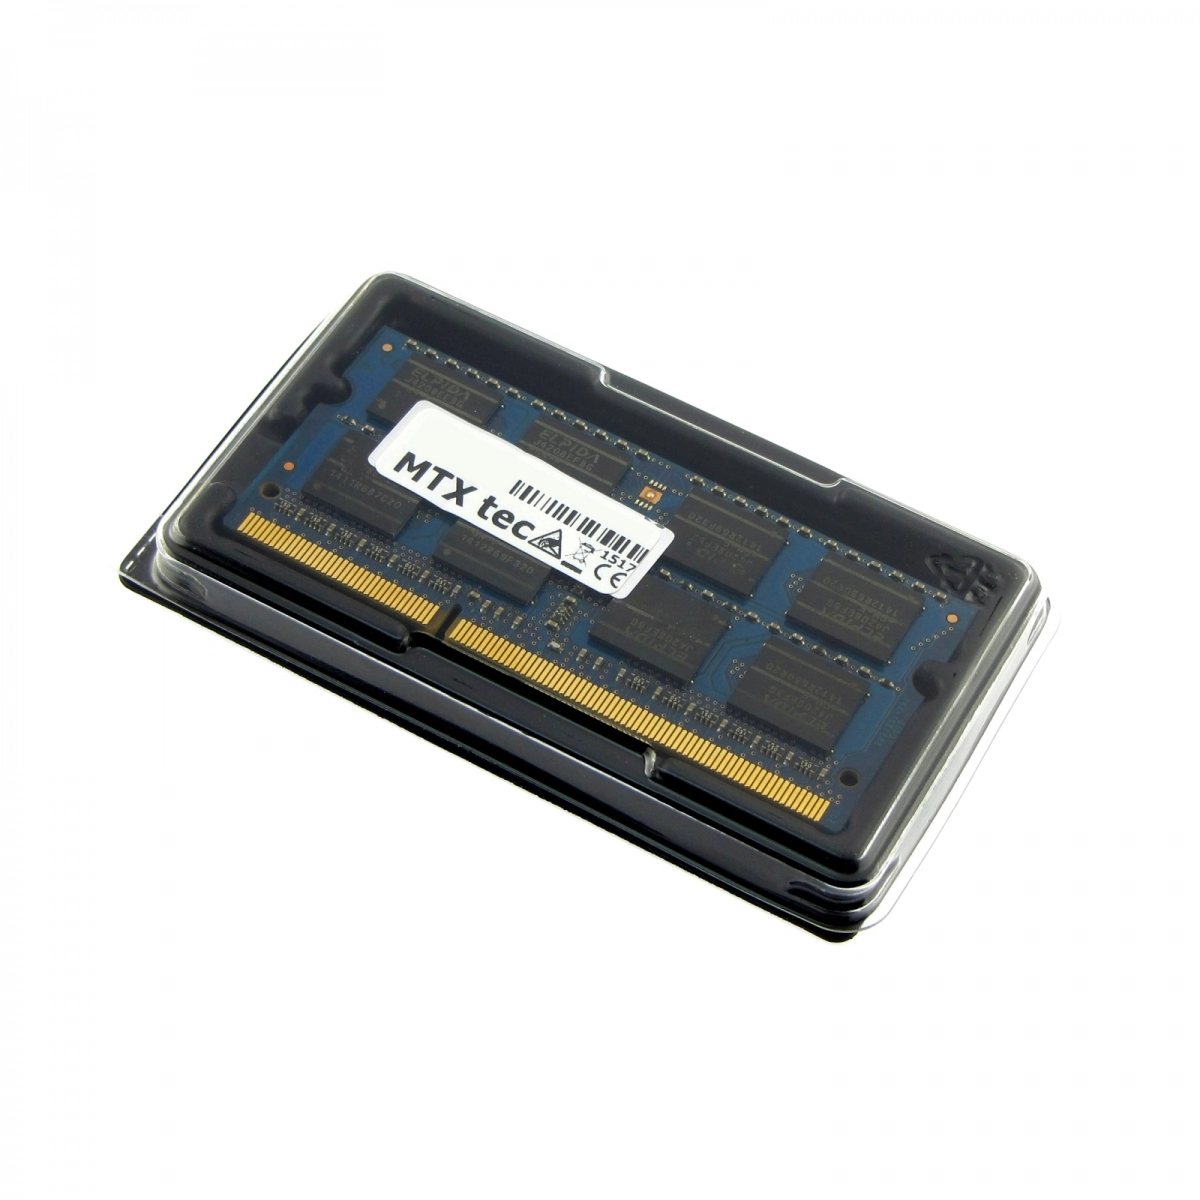 MTXtec Arbeitsspeicher 4 GB RAM für TOSHIBA Satellite Pro R50-B